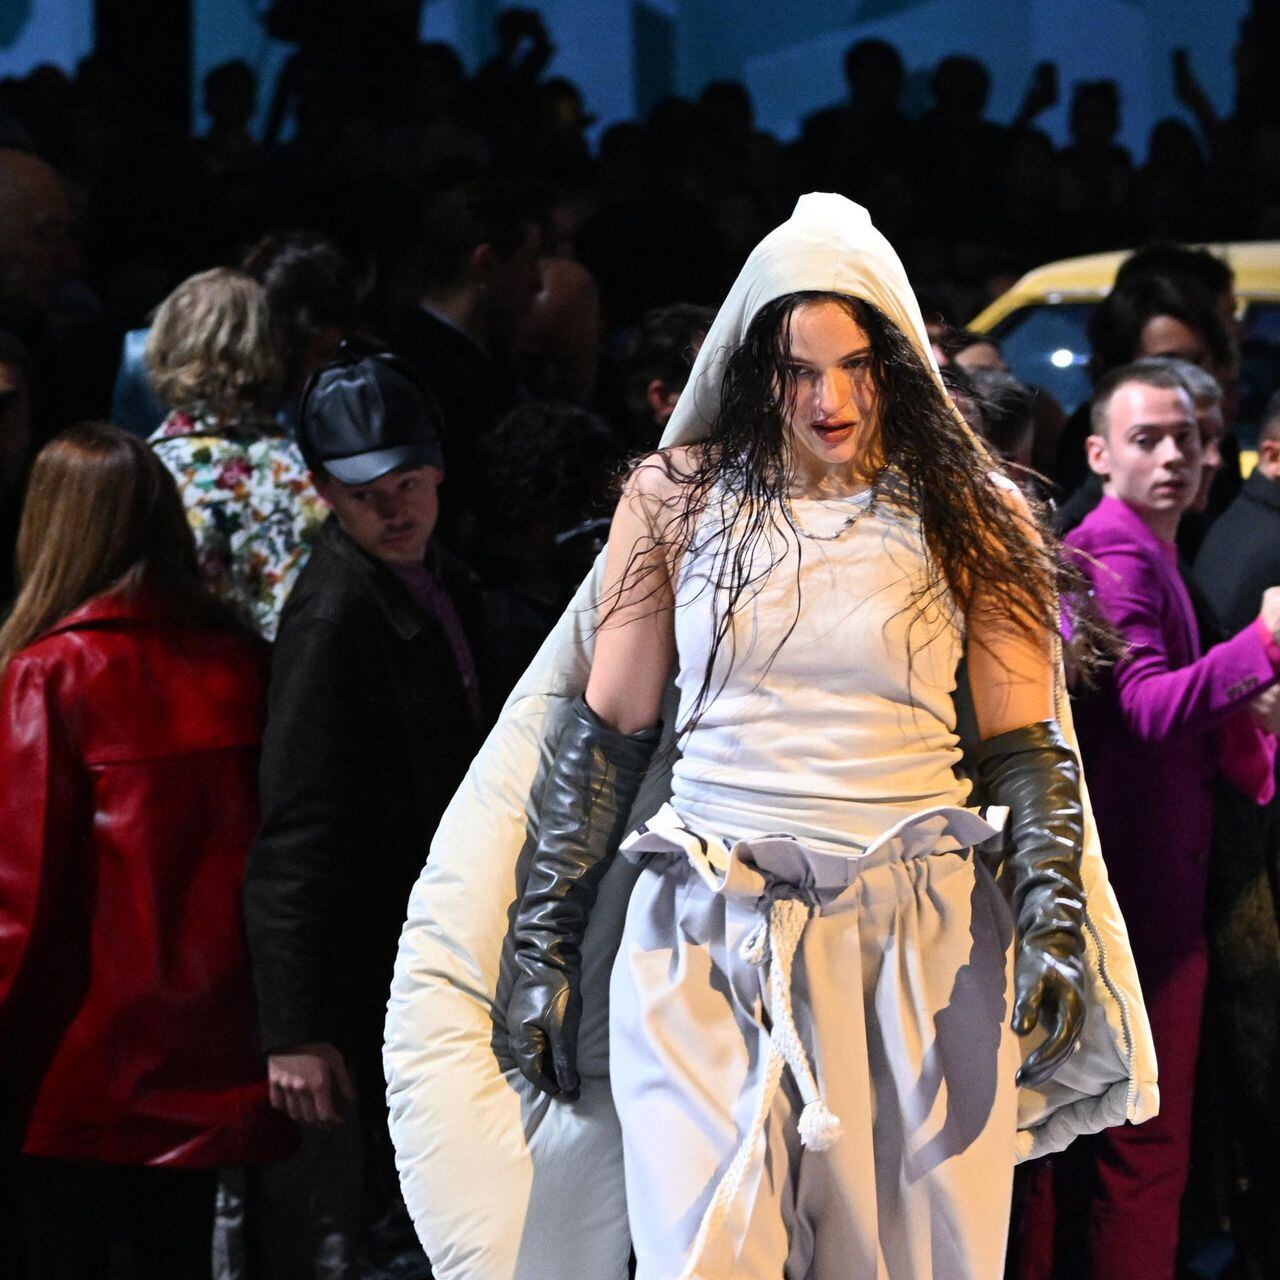 Rosalía deja huella en el desfile de Louis Vuitton en París